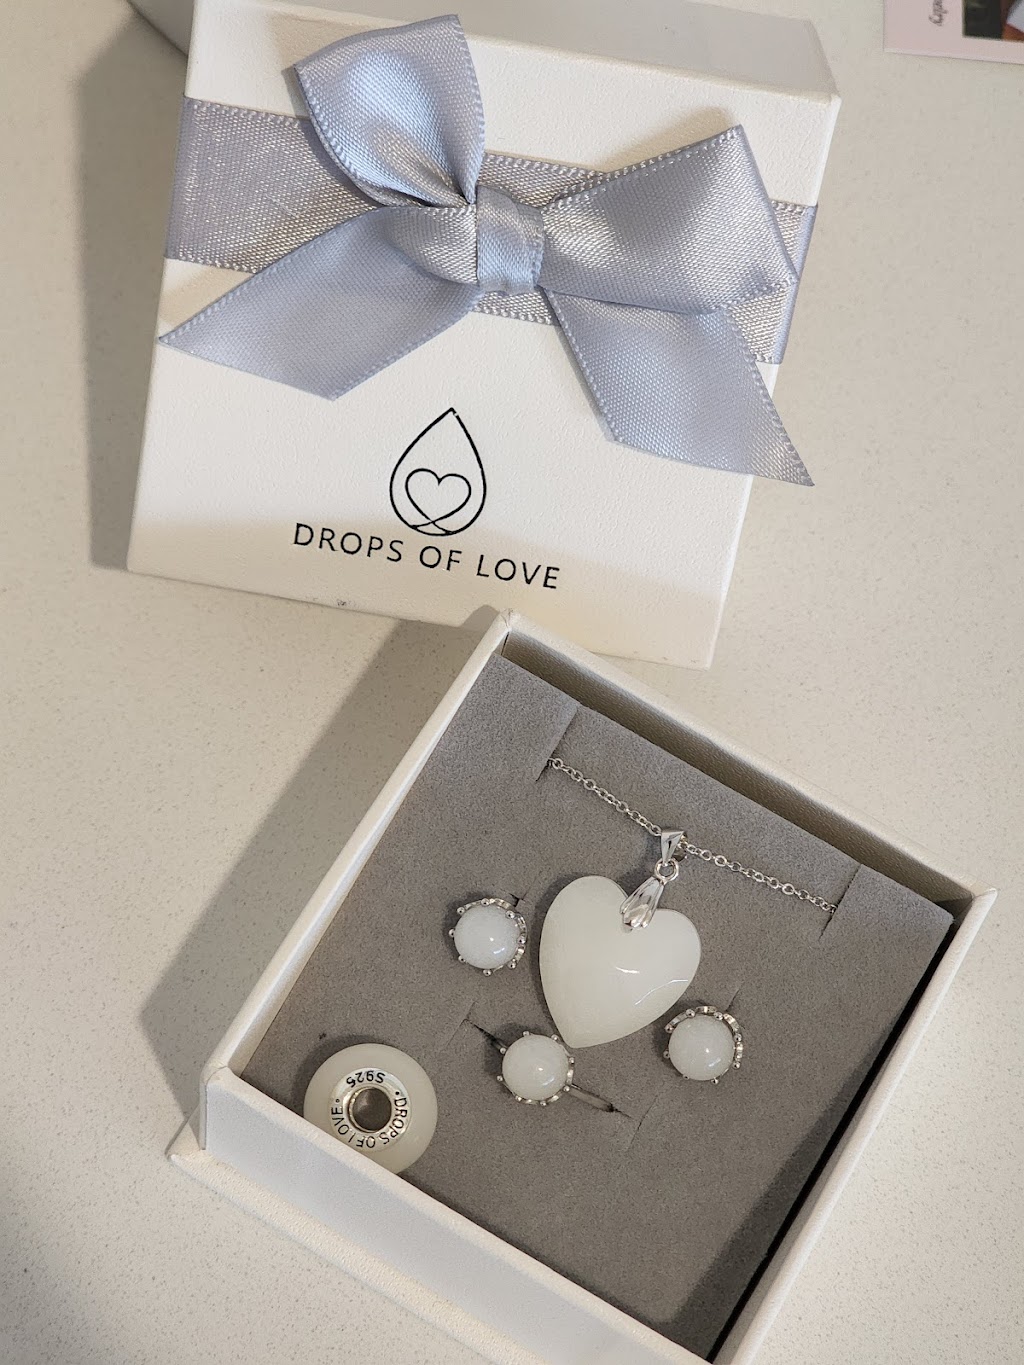 Drops of Love | jewelry store | 11 Danbulla St, Pimpama QLD 4209, Australia | 0405503503 OR +61 405 503 503